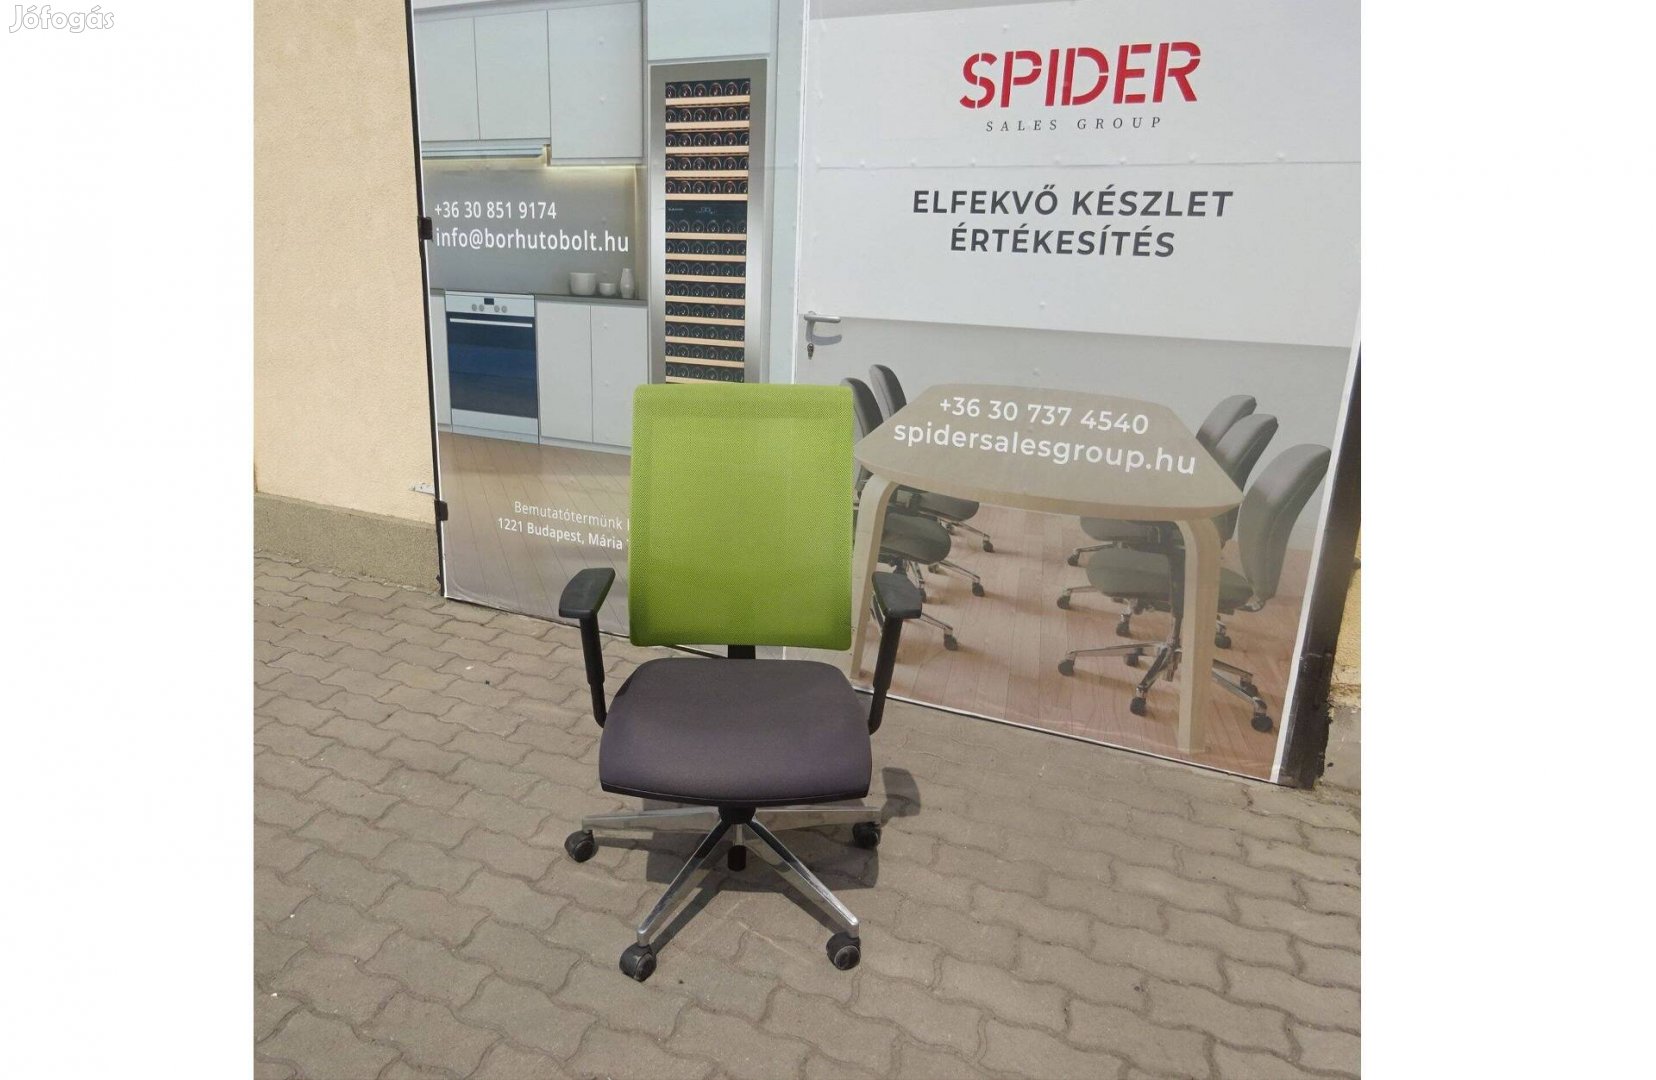 Zöld háttámlájú, hálós forgószék, gurulós szék - használt irodabútor